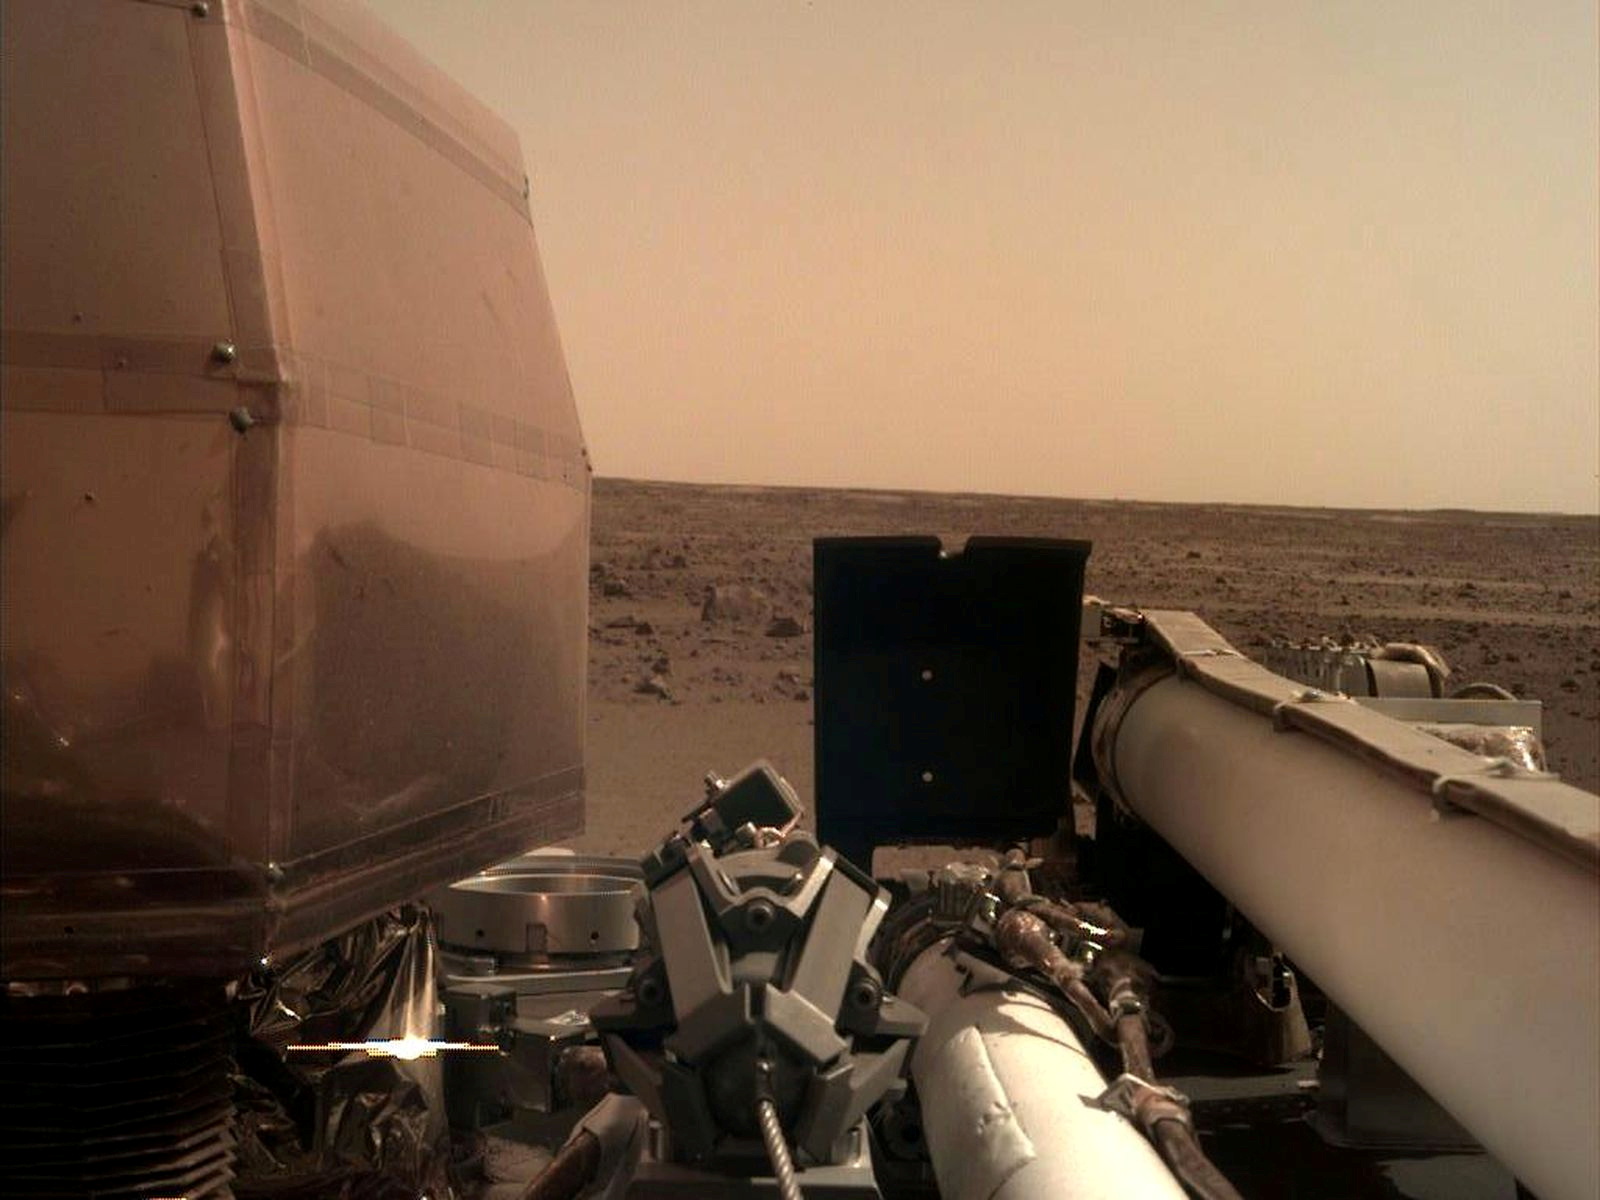 Instrumentos de InSight to están preparados para estudiar los movimientos telúricos de Marte - NASA/JPL-Caltech/Handout via REUTERS 